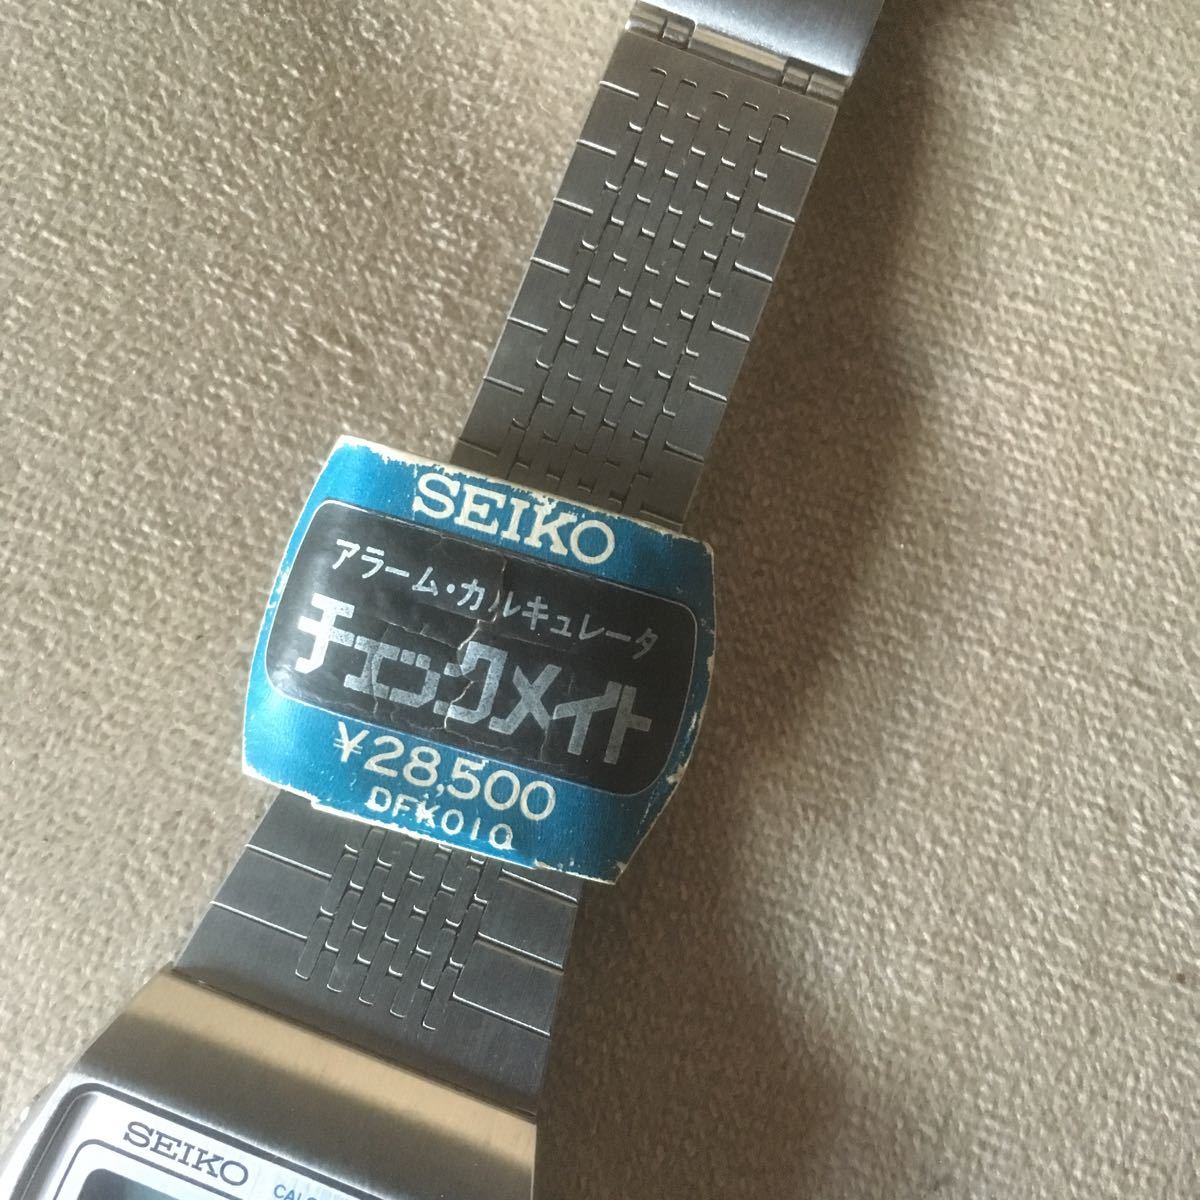 K12 SEIKO Seiko checkmate сигнализация наручные часы 0359-5000 неиспользуемый товар текущее состояние утиль 